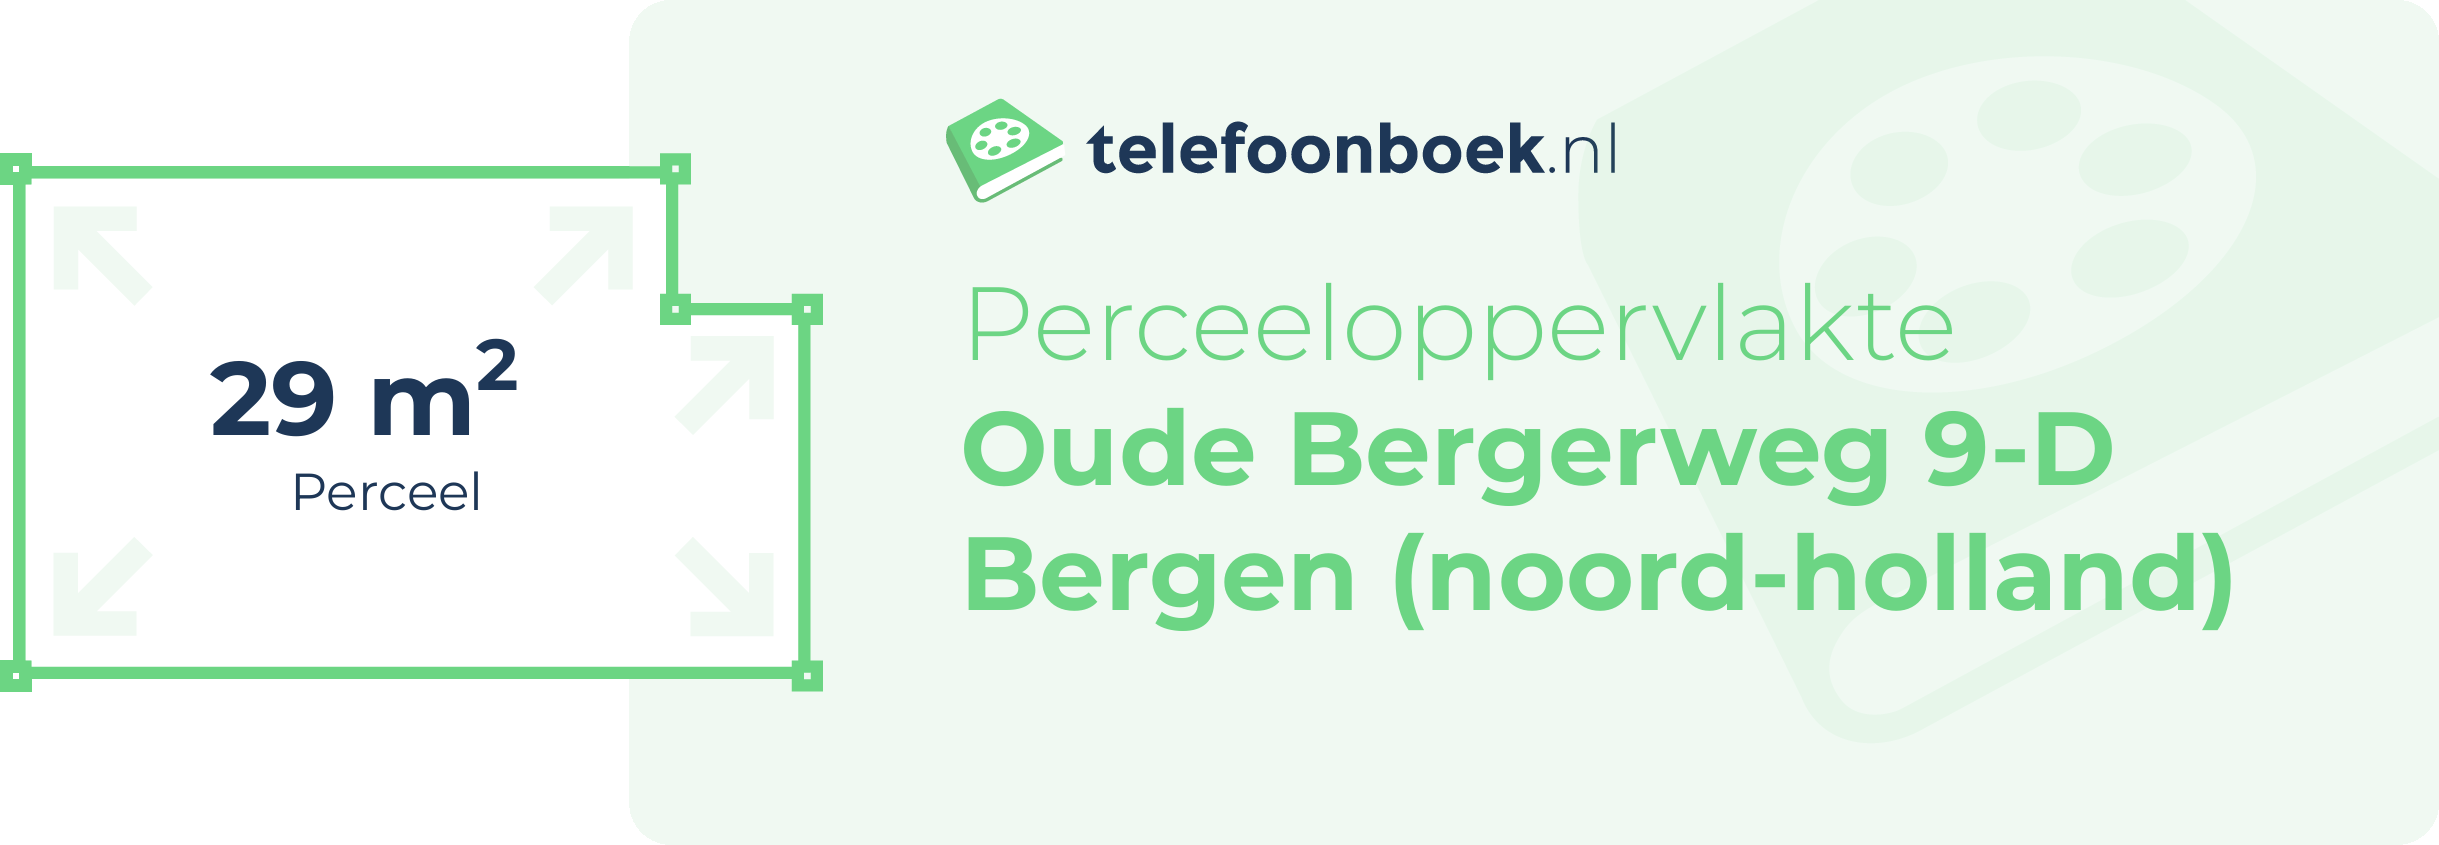 Perceeloppervlakte Oude Bergerweg 9-D Bergen (Noord-Holland)